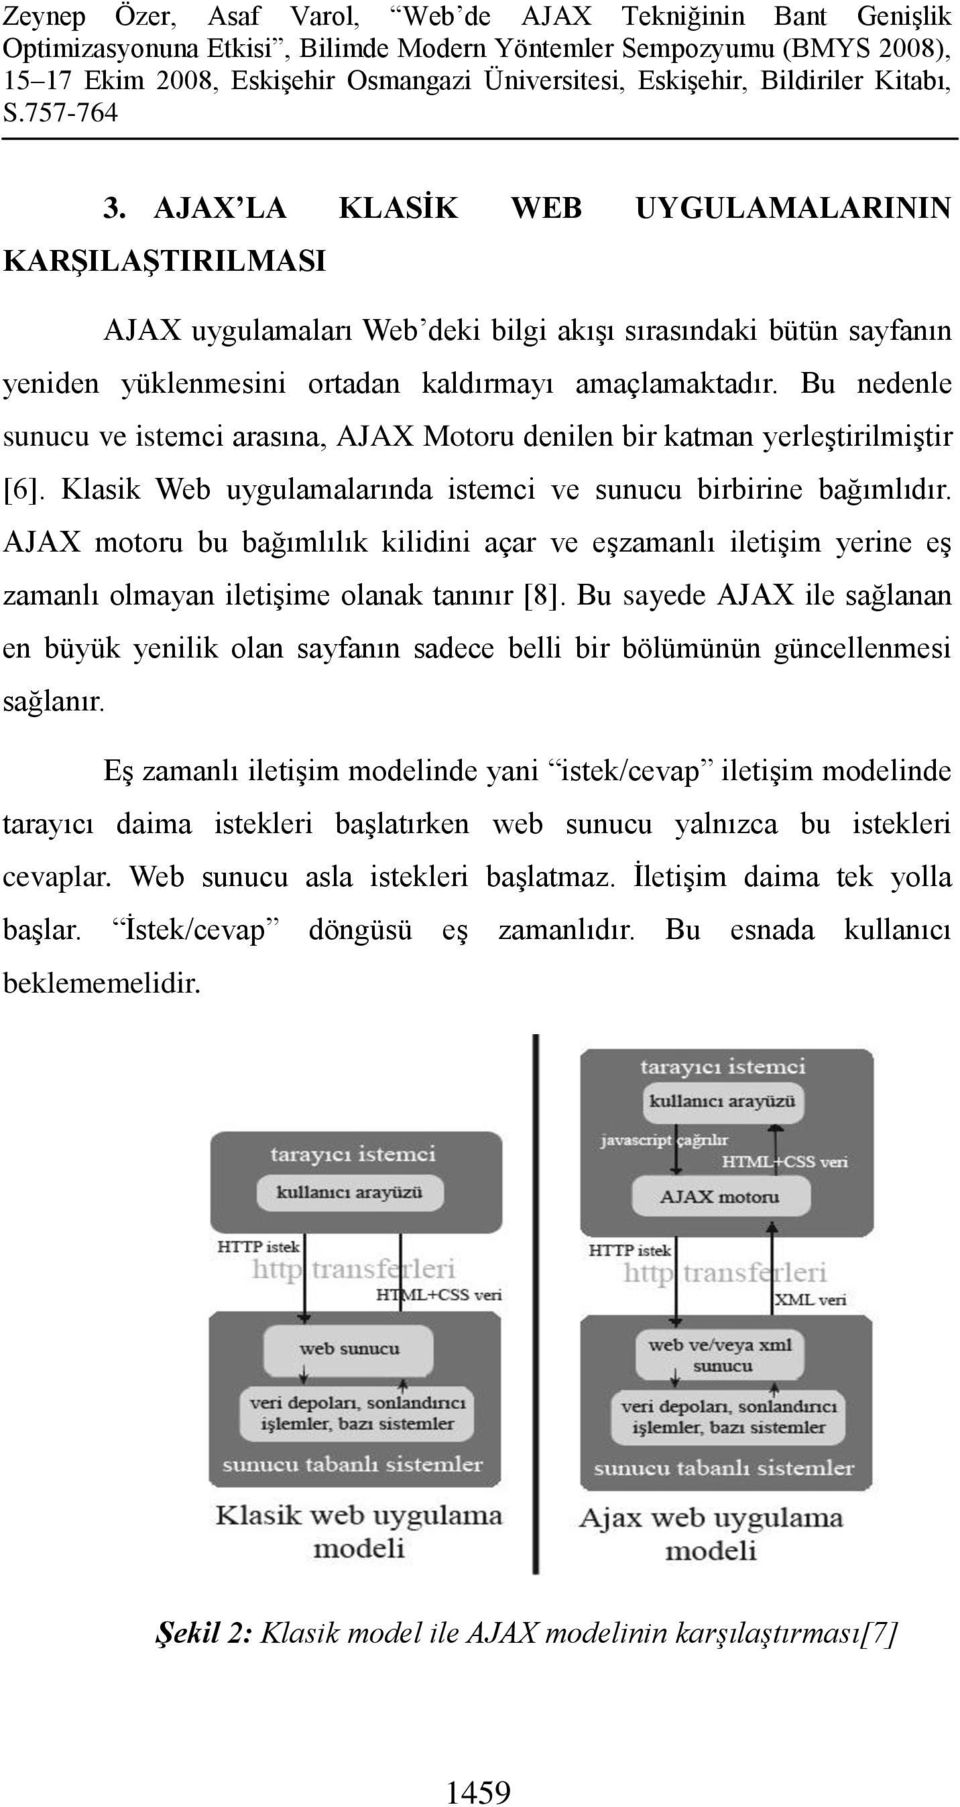 AJAX motoru bu bağımlılık kilidini açar ve eşzamanlı iletişim yerine eş zamanlı olmayan iletişime olanak tanınır [8].